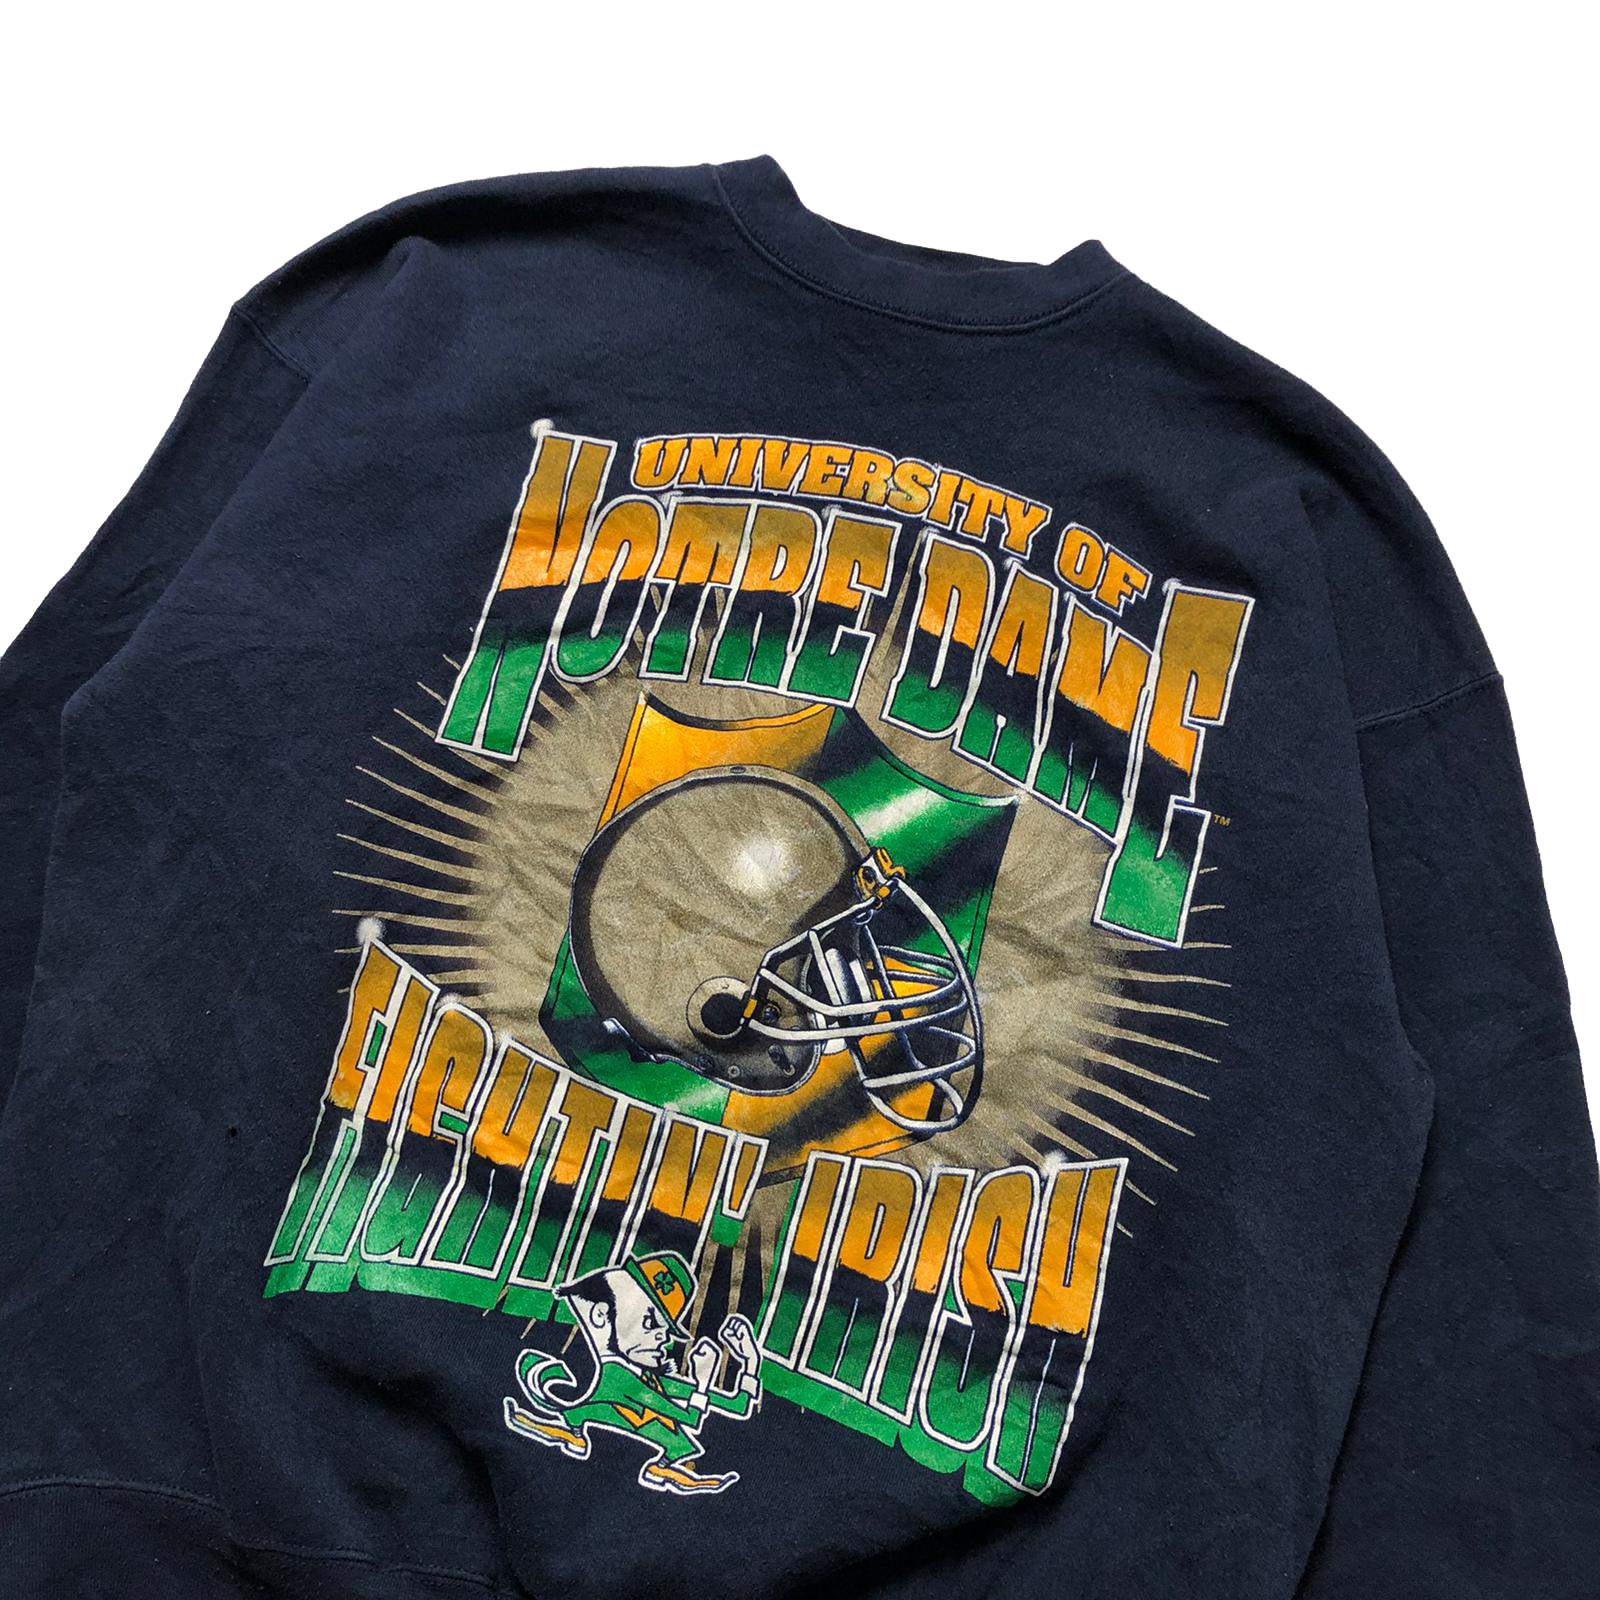 90's Notre Dame sweatshirt